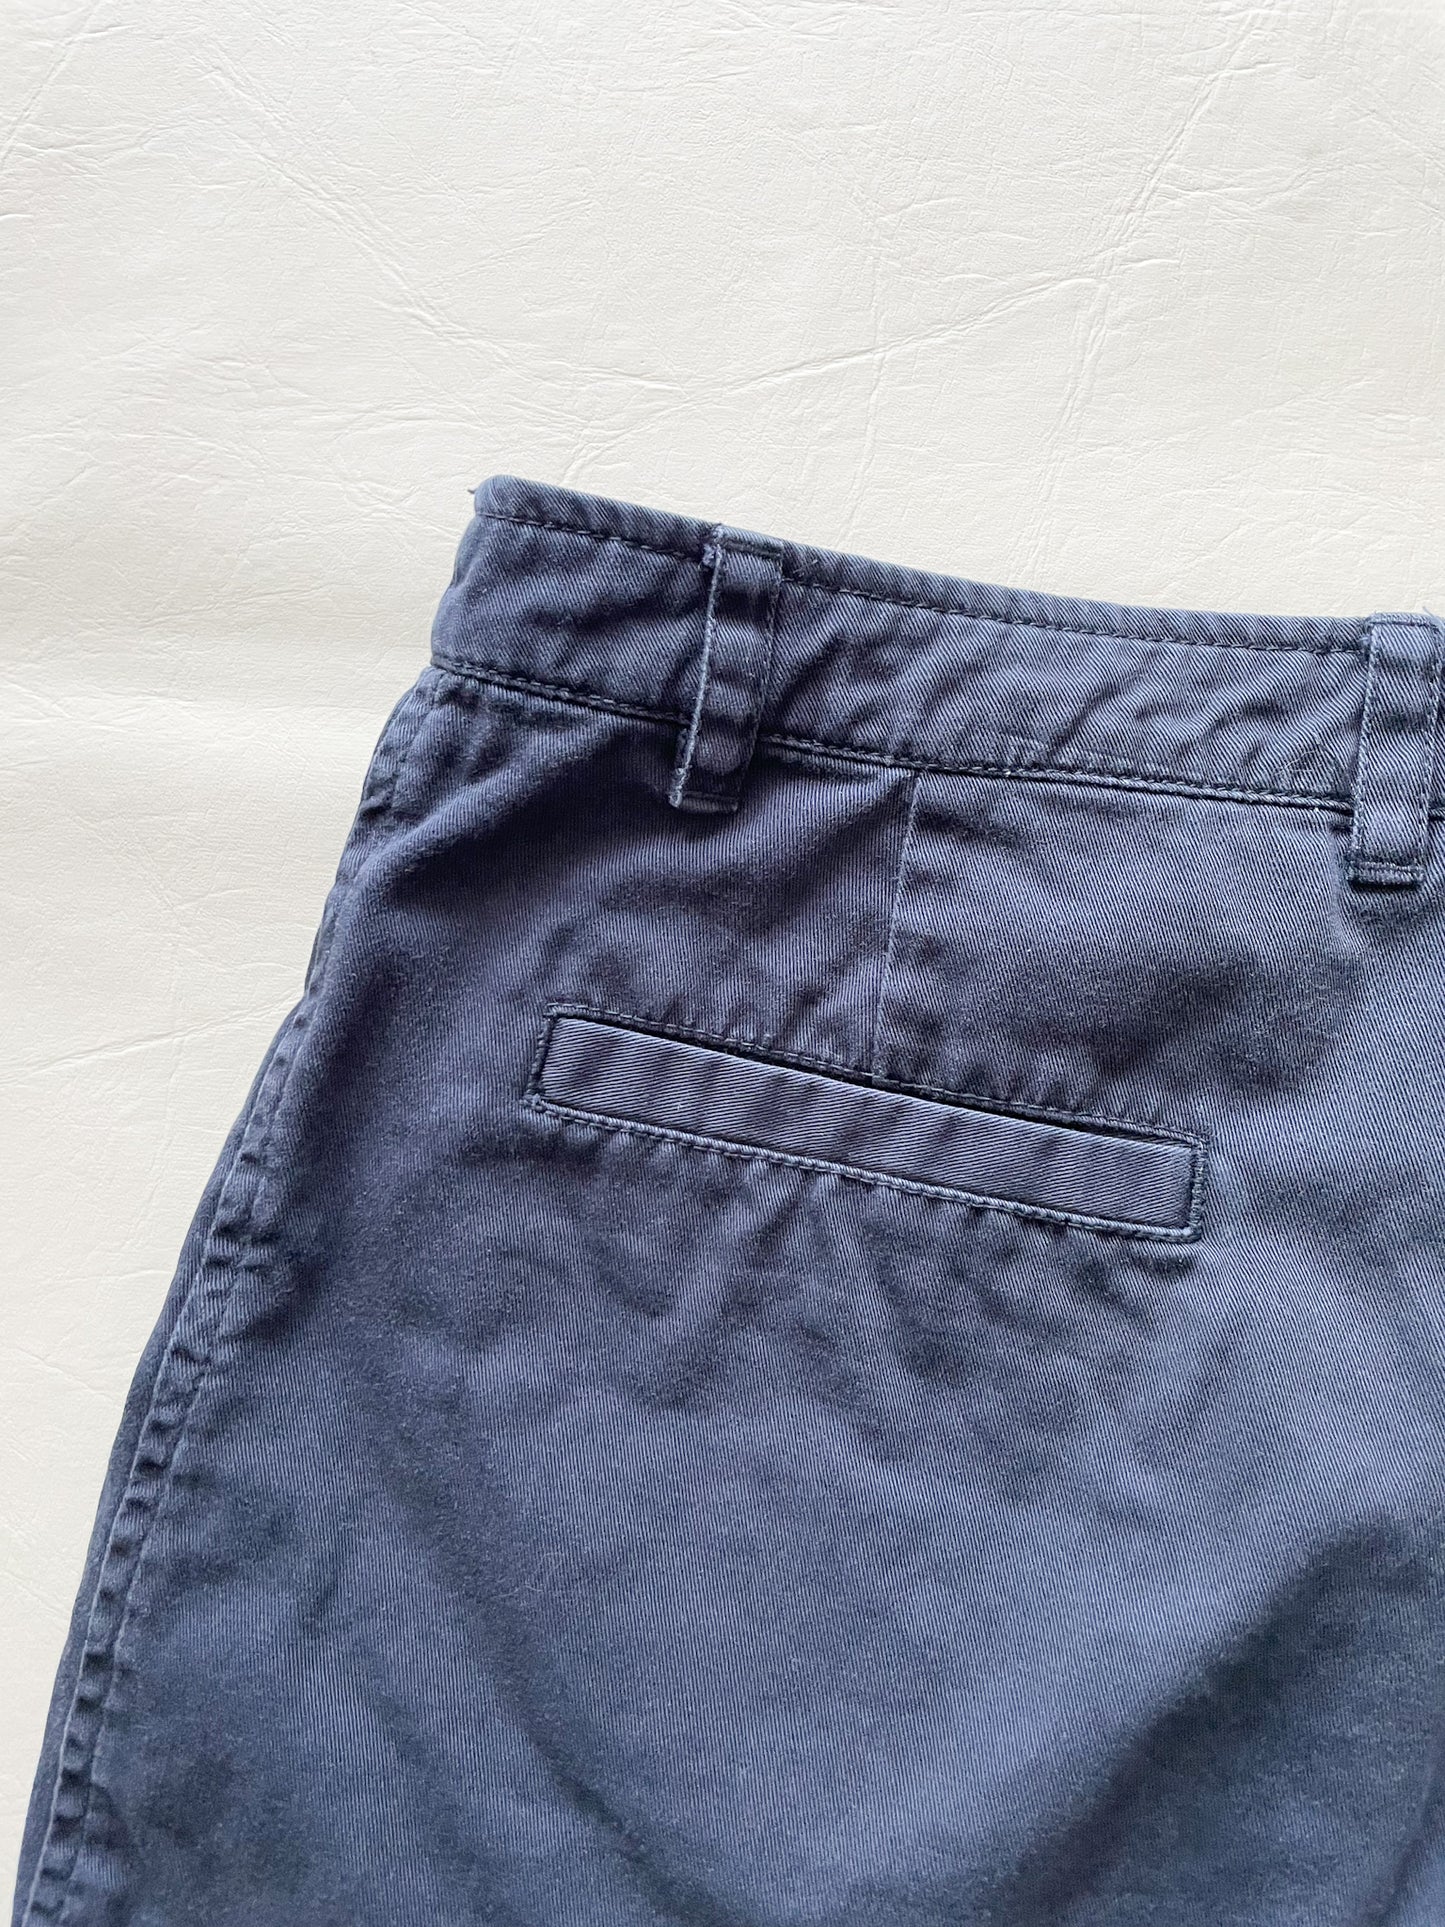 Jacob Annex Navy 100% Cotton Mid Rise Shorts - Size 3/4